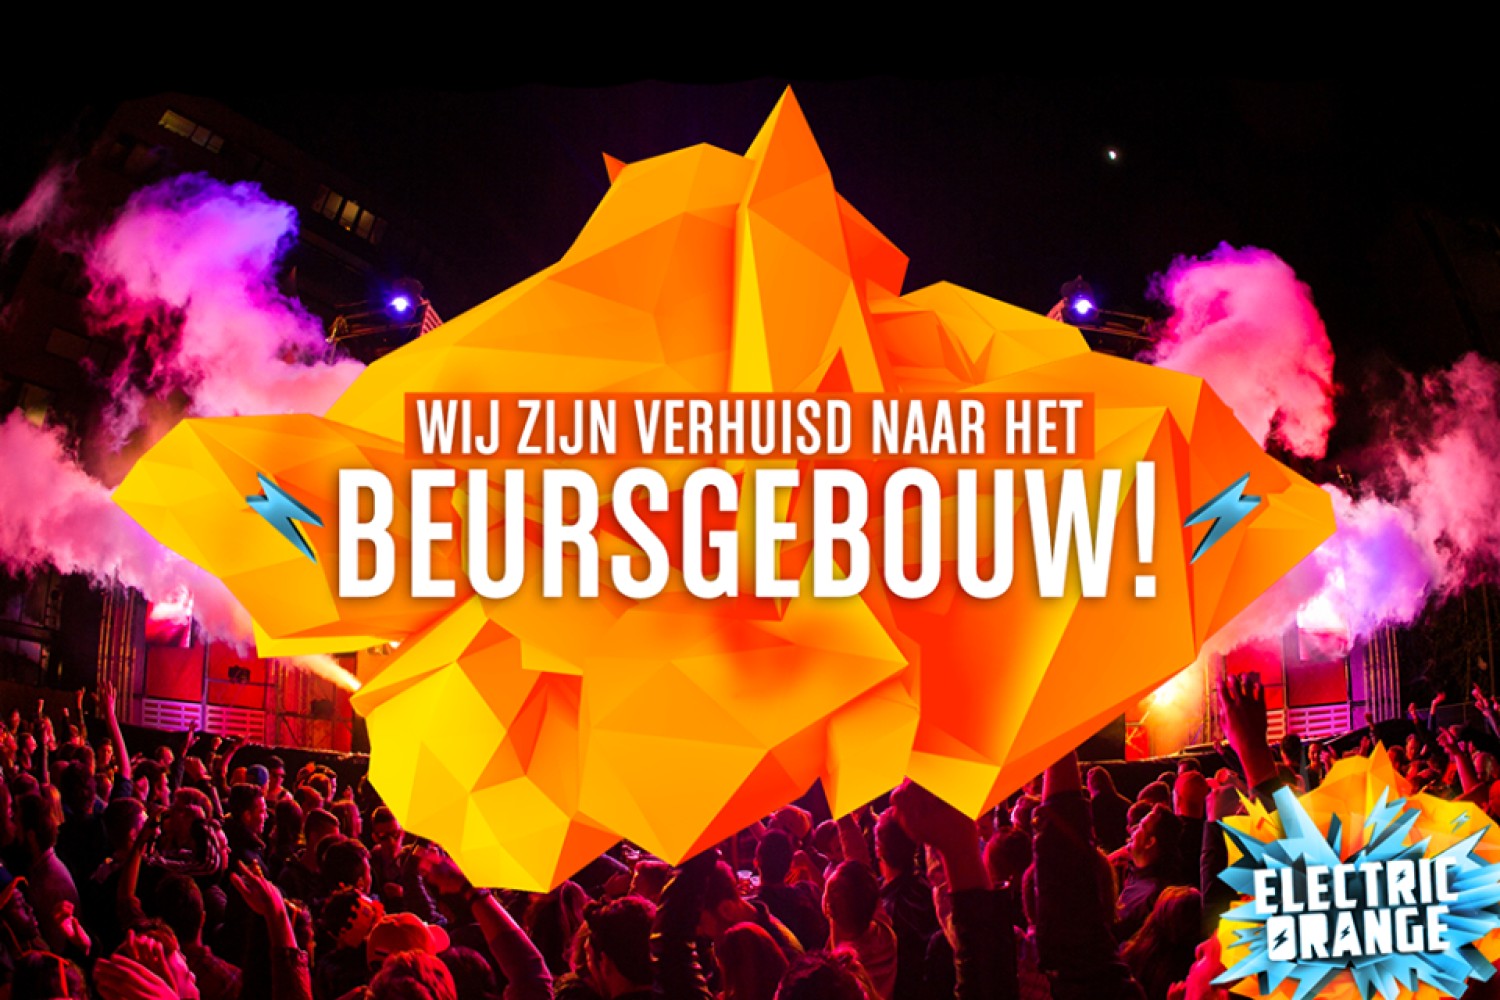 Party nieuws: Electric Orange verhuist naar Beursgebouw Eindhoven!